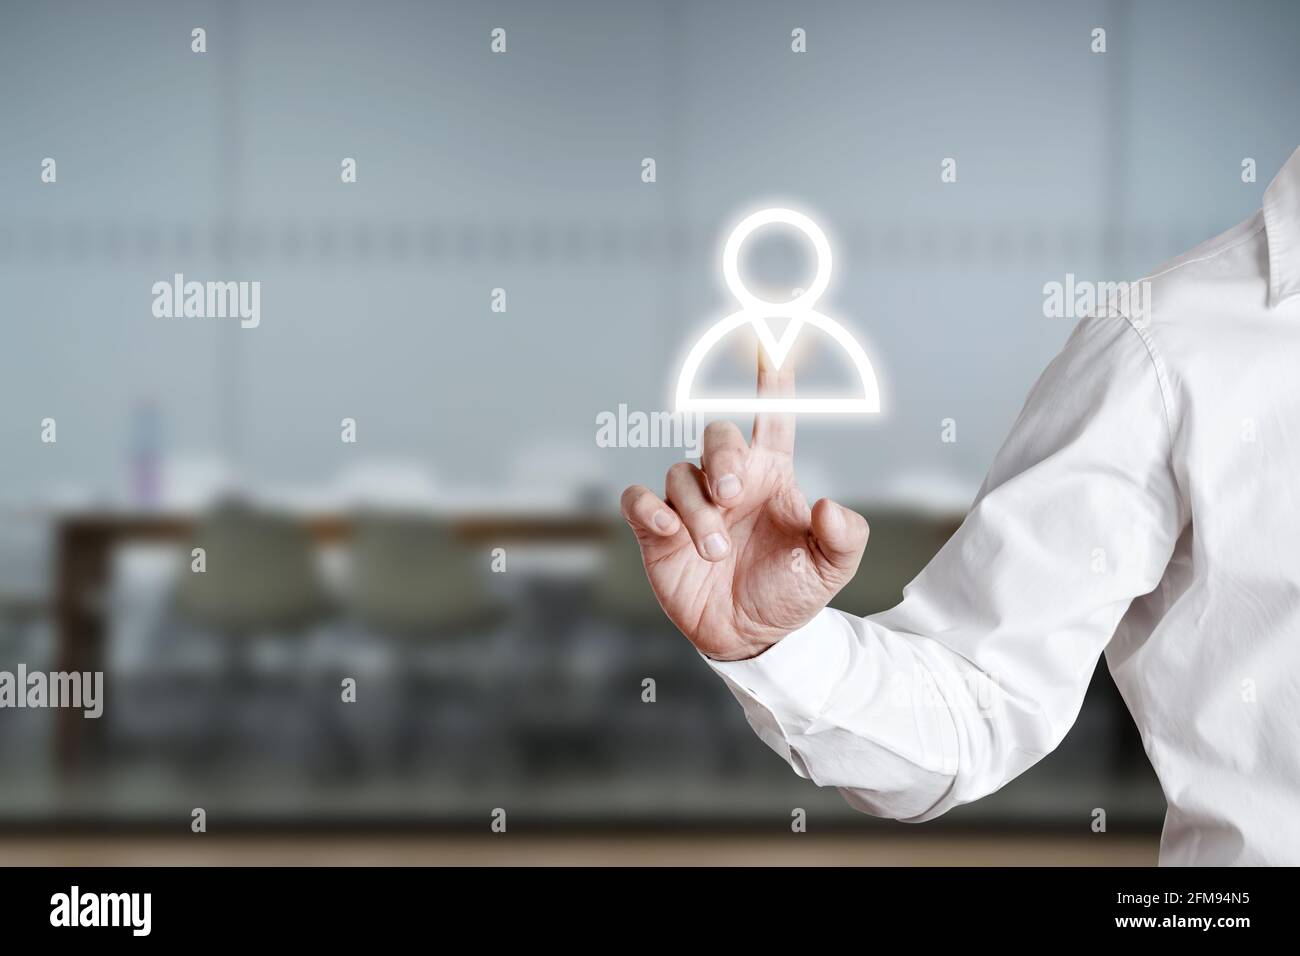 Un homme appuie sur l'icône employé sur un écran d'affichage virtuel. Concept de création d'équipe ou de recrutement. Banque D'Images